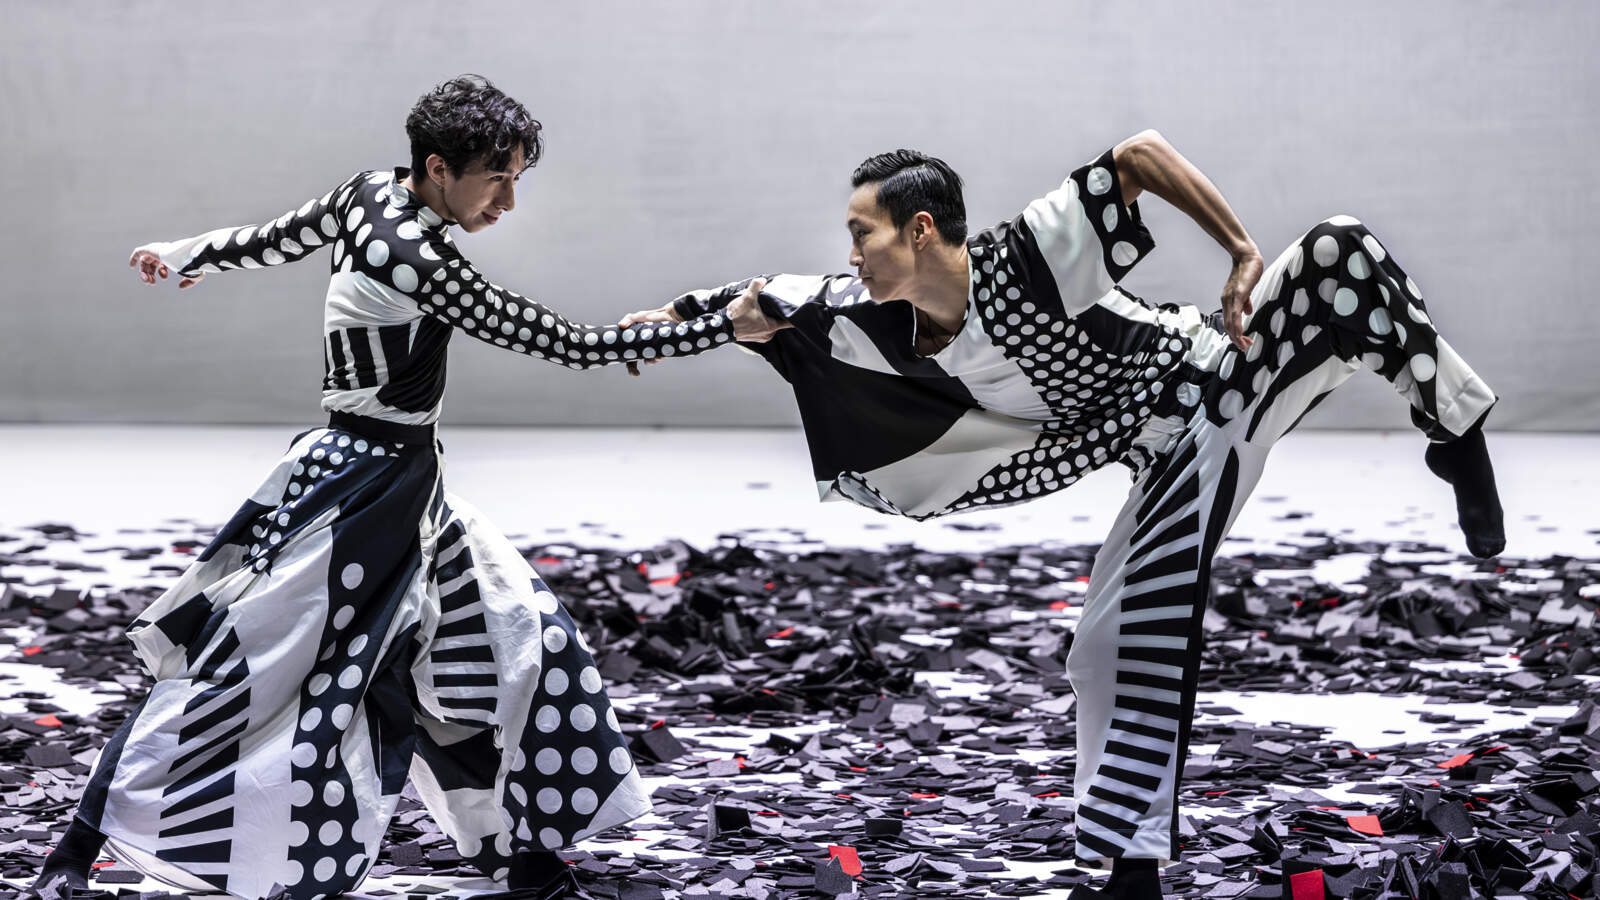 Två dansare, båda iförda lösa kläder tryckta med geometriska mönster, dansar på en scen beströdd med små svarta rutor.